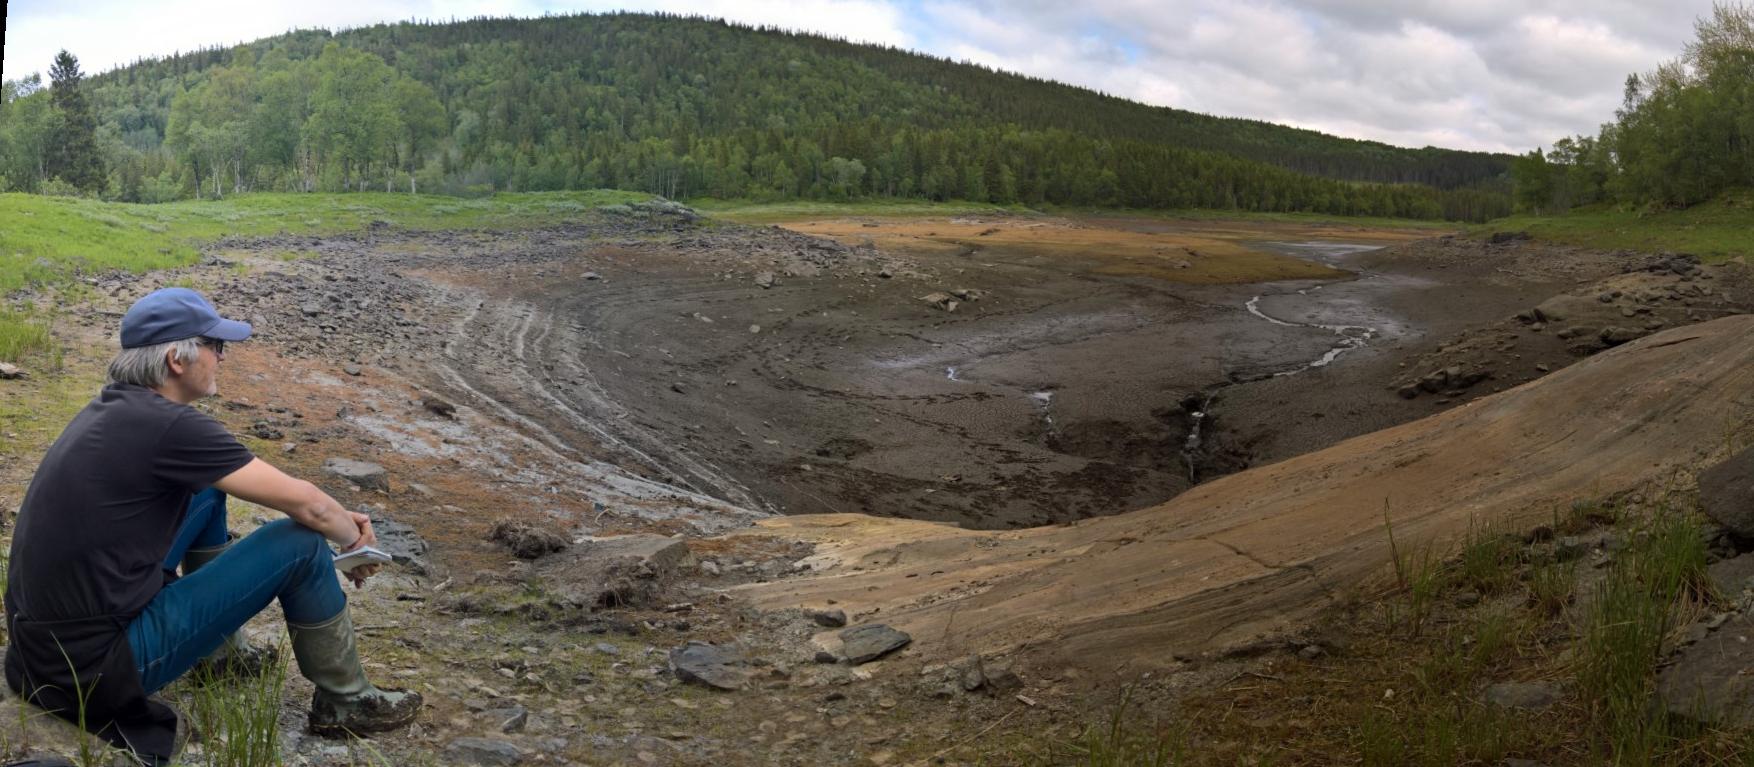 55 millioner liter vann er forsvunnet, og Engavatnet i Velfjord er borte. Vannet forsvinner ned i kratrene på innsjøbunnen. Geolog og artikkelforfatter Reidar Müller til venstre.